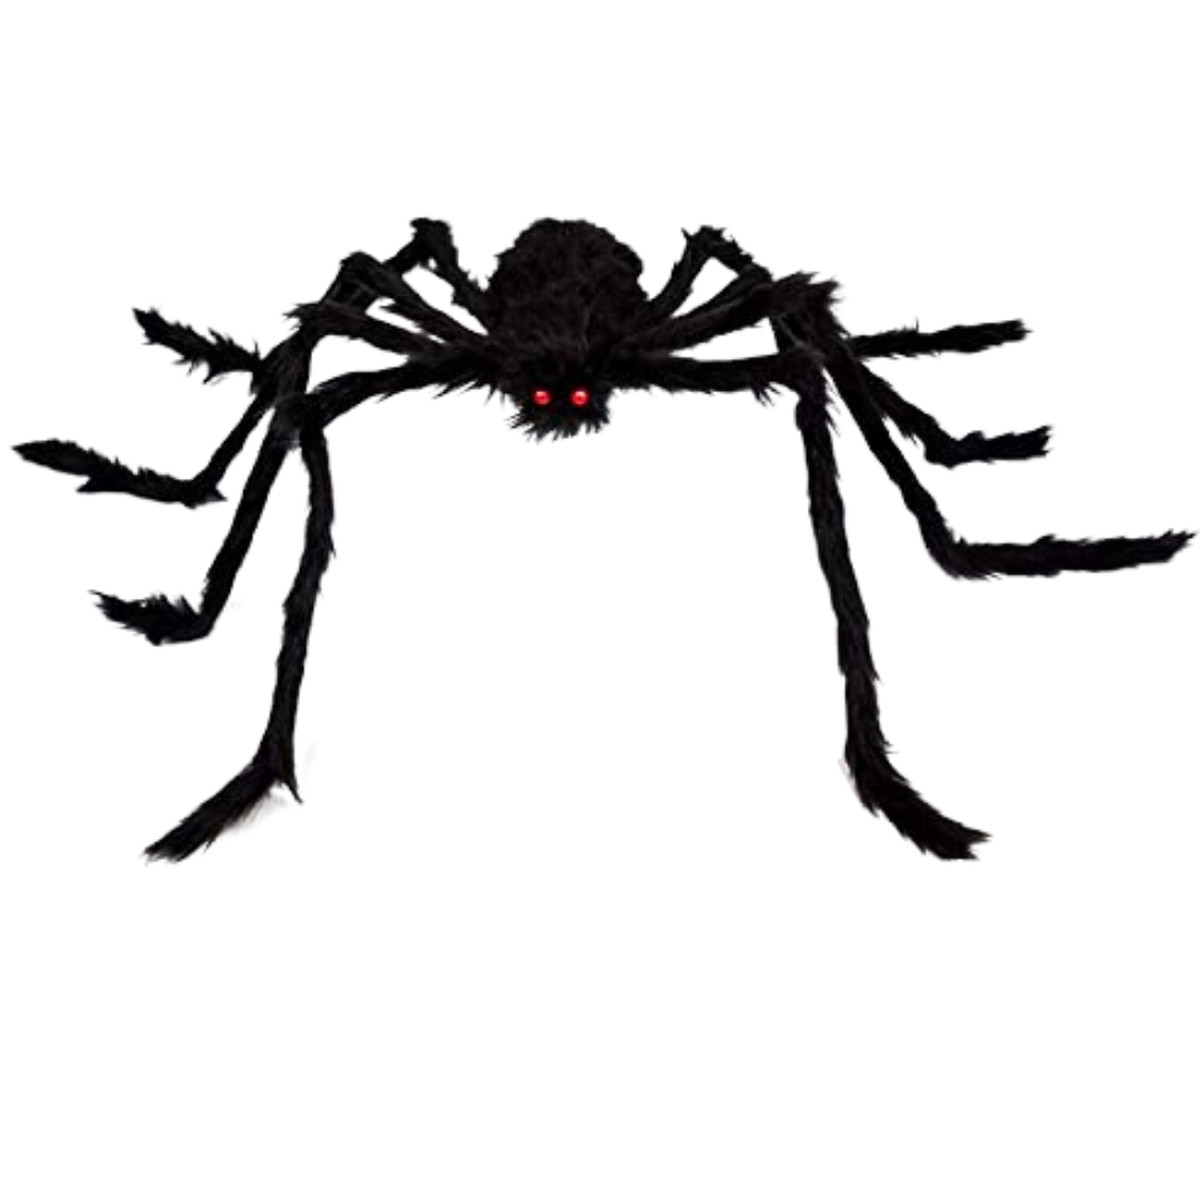 OCATO 200-inch Spider and Spider Web